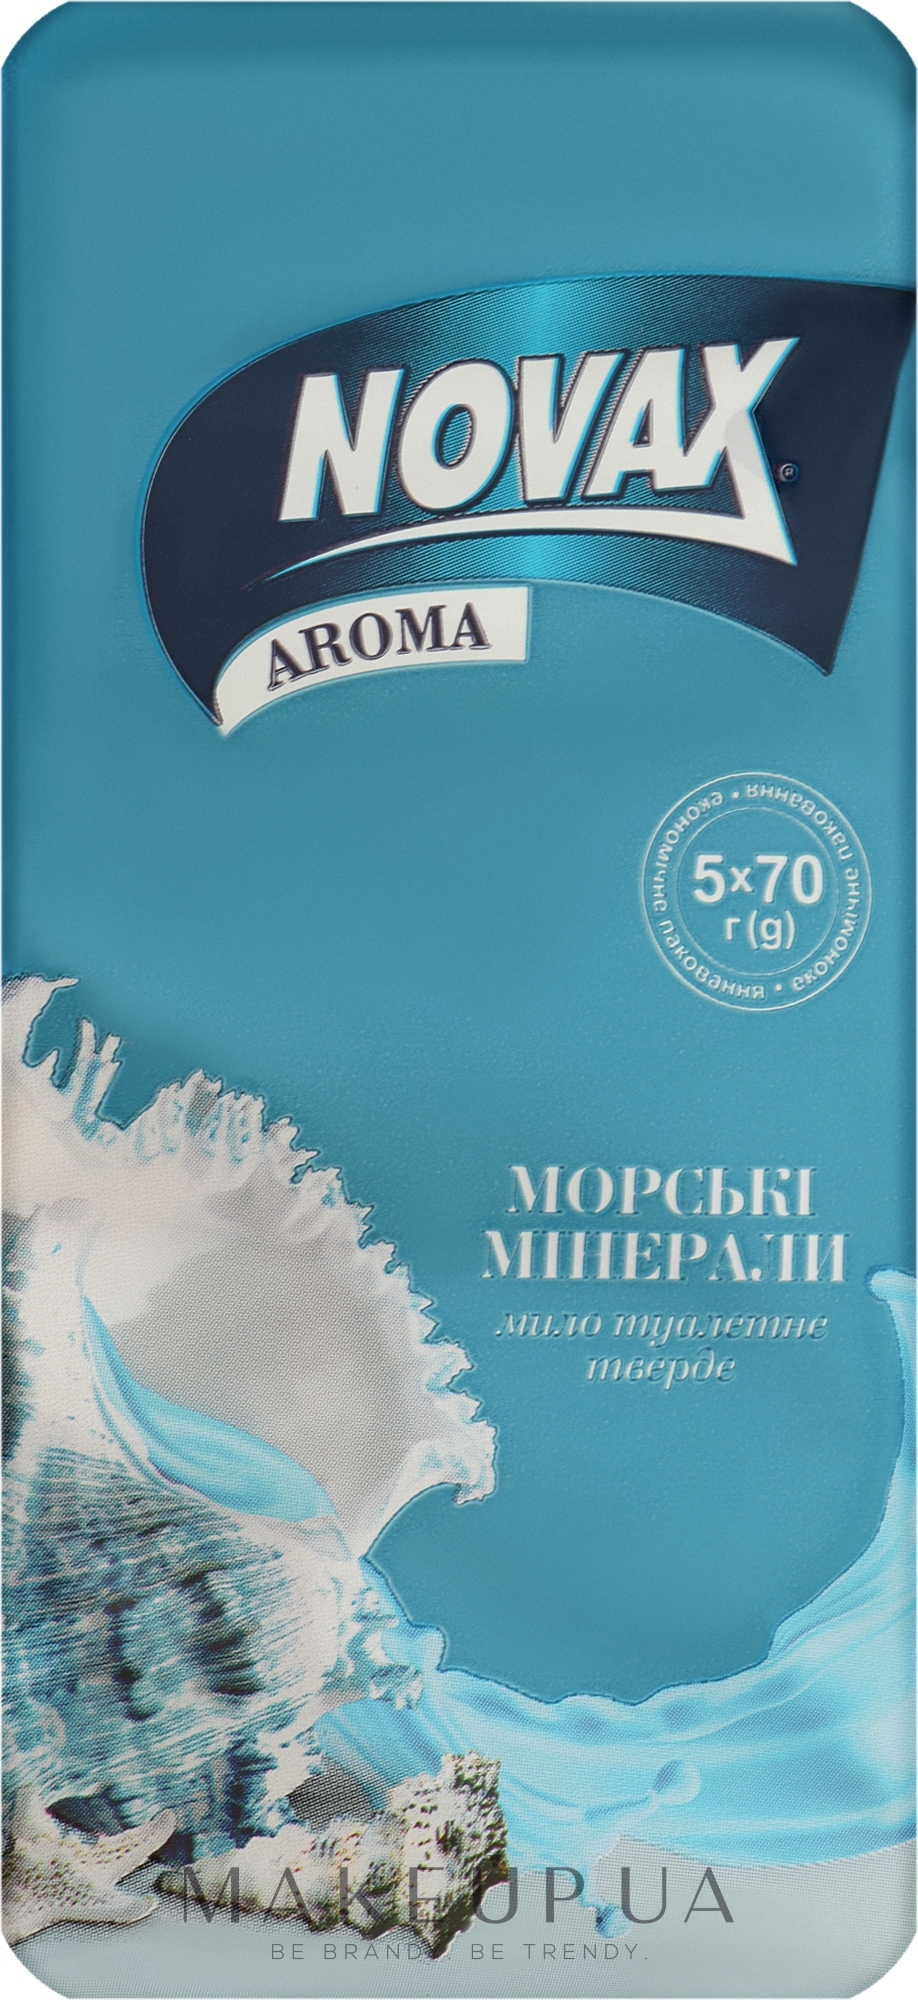 Твердое туалетное мыло "Морские минералы" - Novax Aroma — фото 5x70g